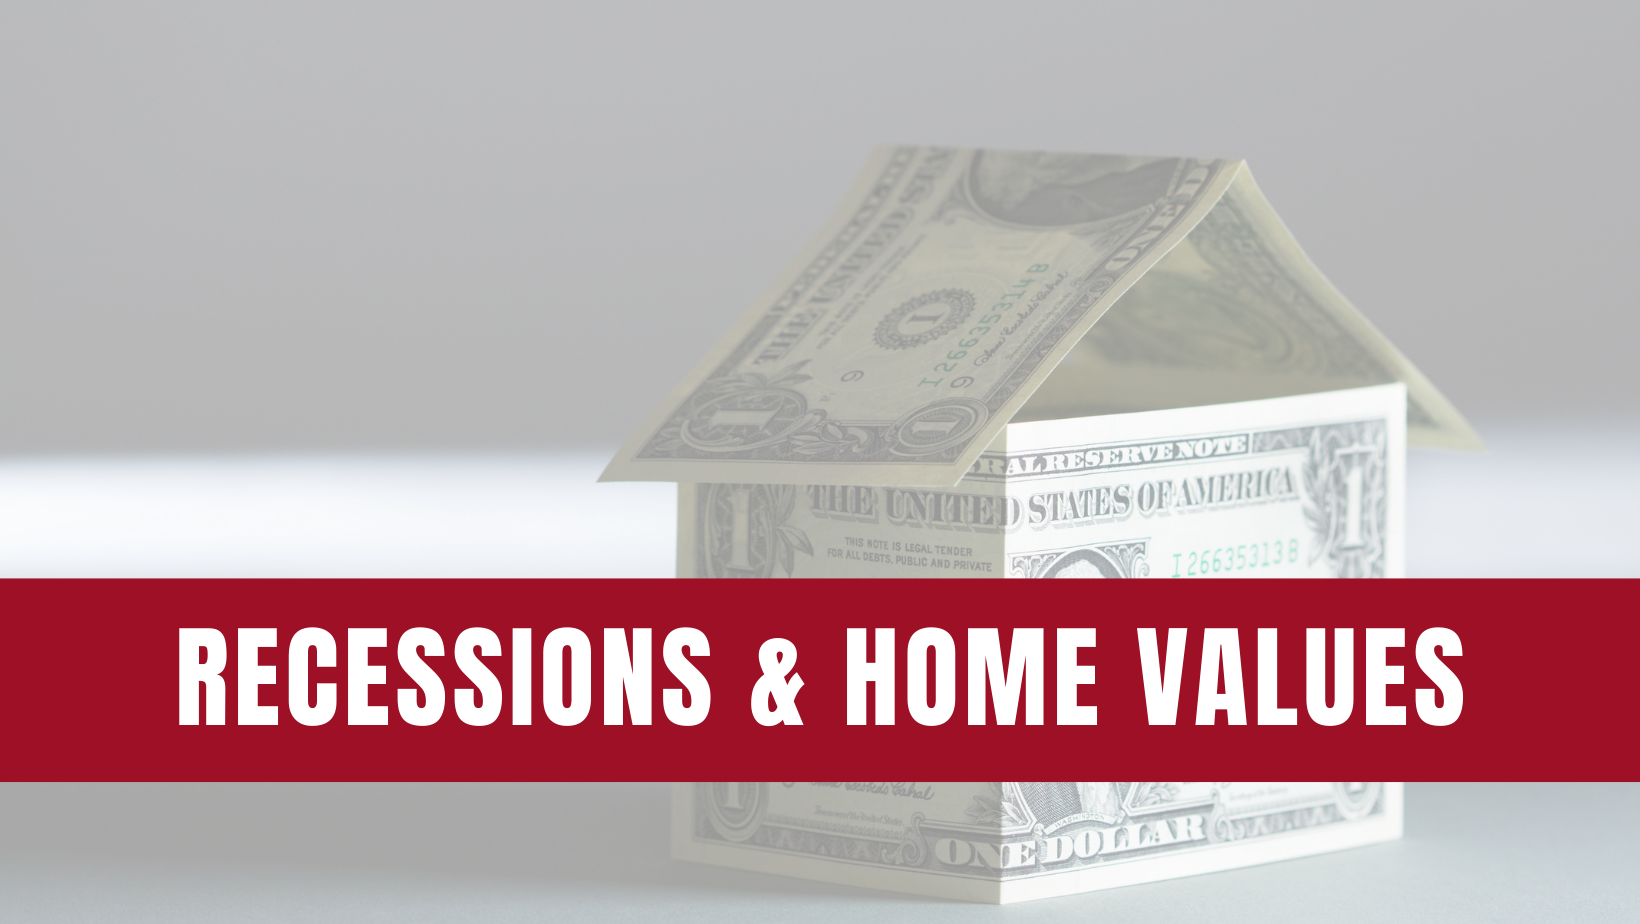 Recessions & Home Values